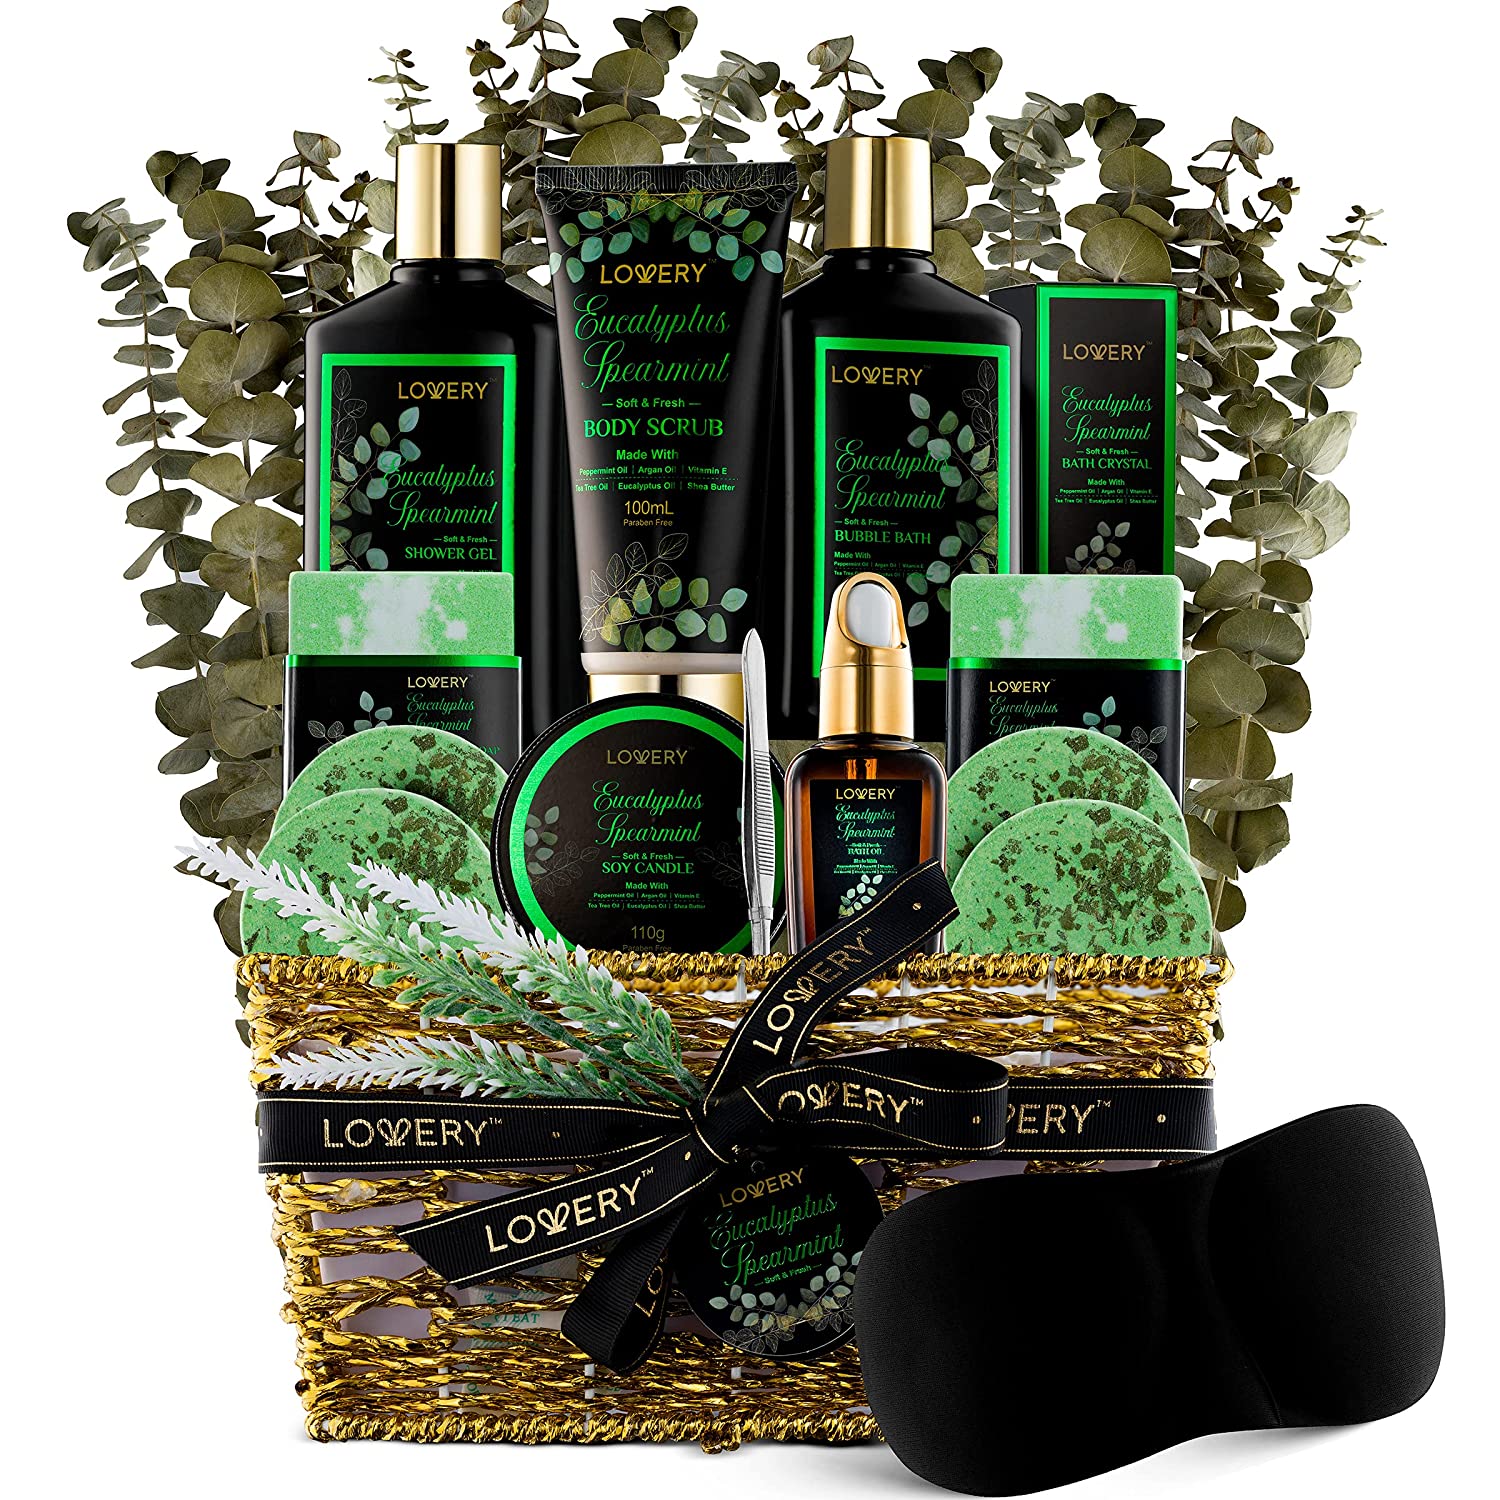 Eucalyptus Spearmint Bath Set - Luxury Aromatherapy Home Spa Set